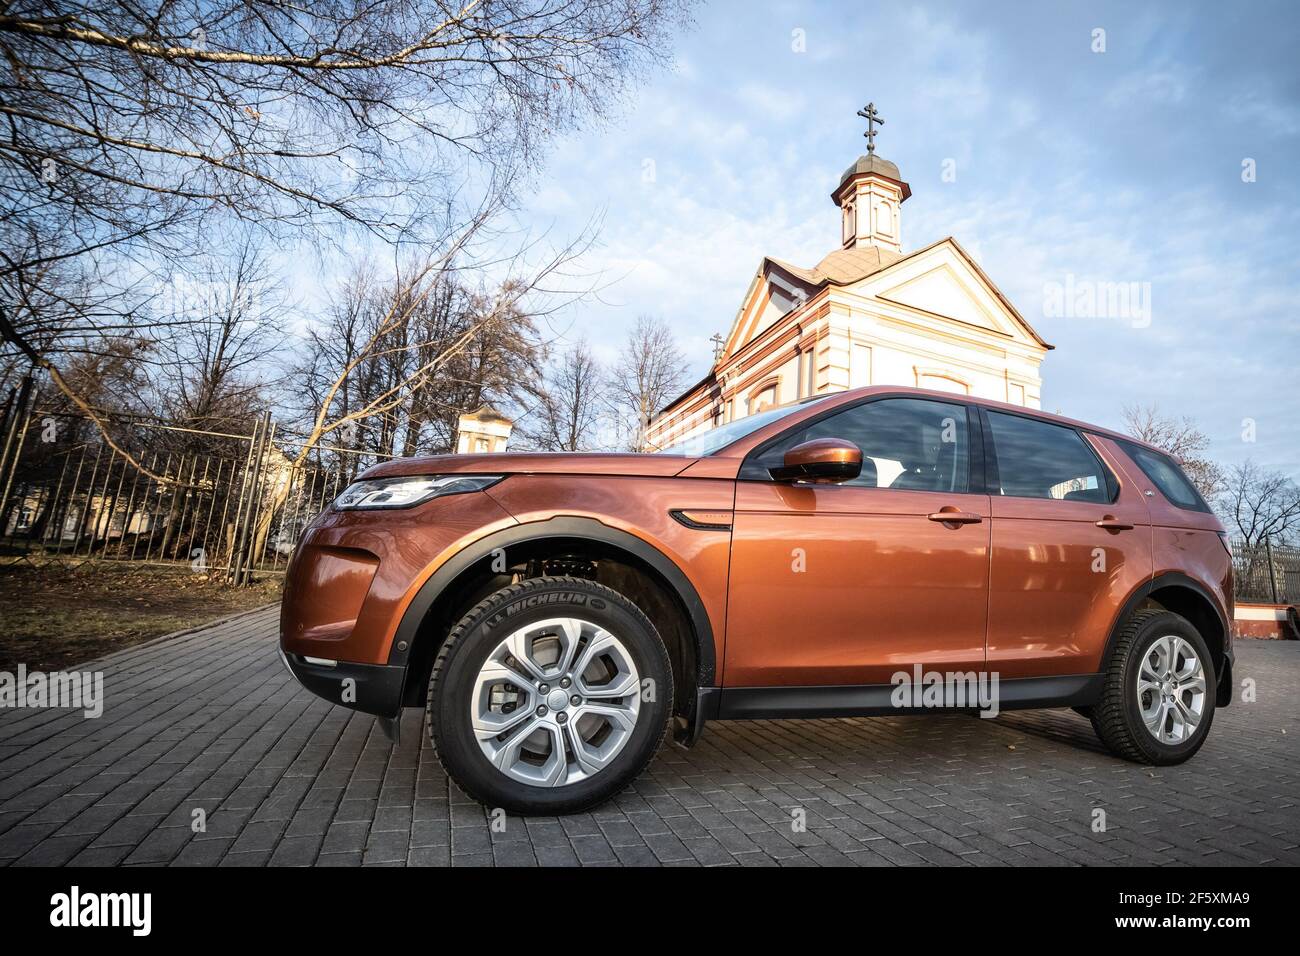 Moskau, Russland - 20. Dezember 2019: Seitenansicht des neuen Premium england suv. Land Rover Discovery Sport in der Nähe geparkt chirsh. Orange Allradantrieb Auto steht auf dem Boden. Stockfoto